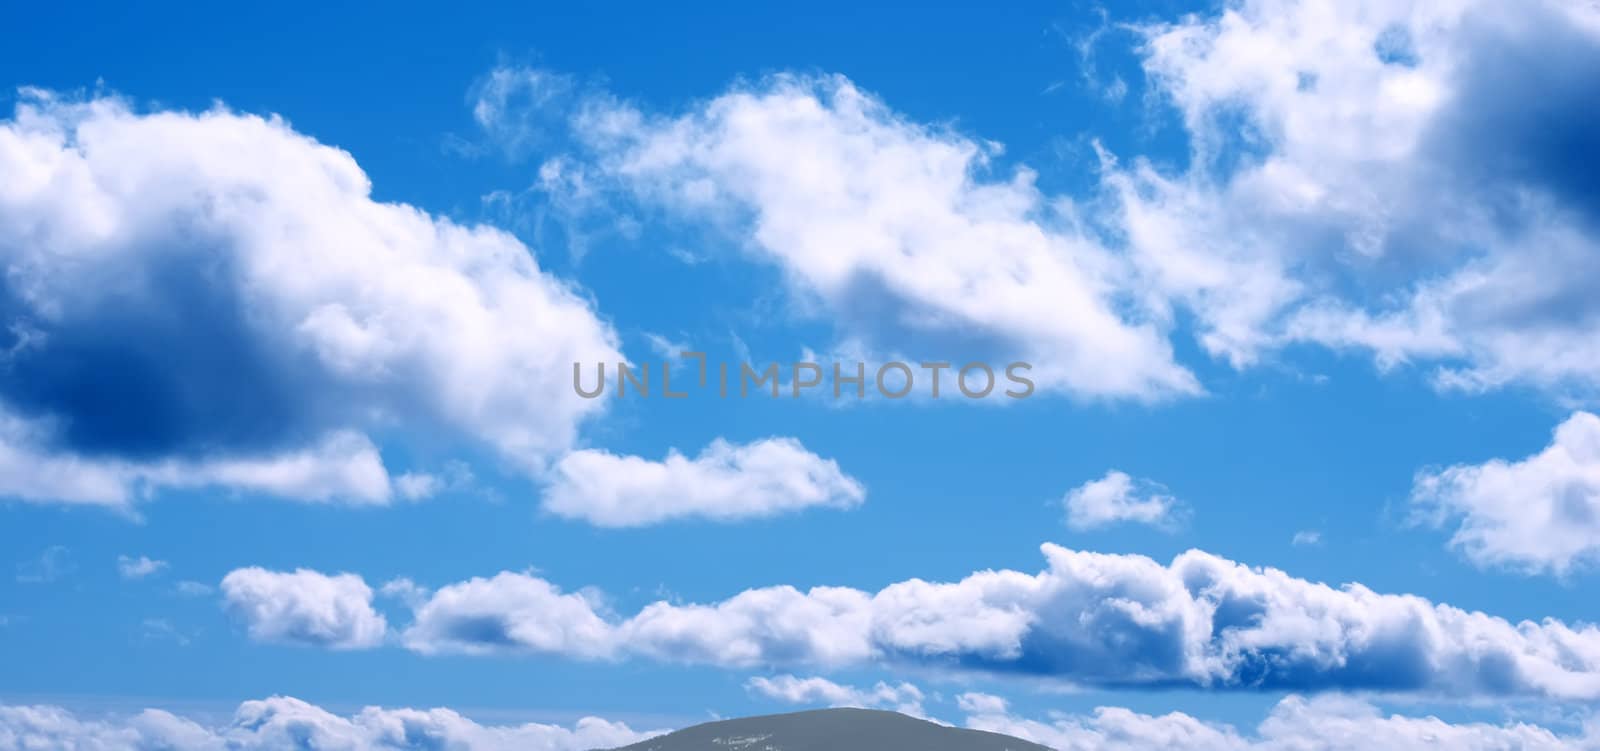 Clouds by alex_garaev